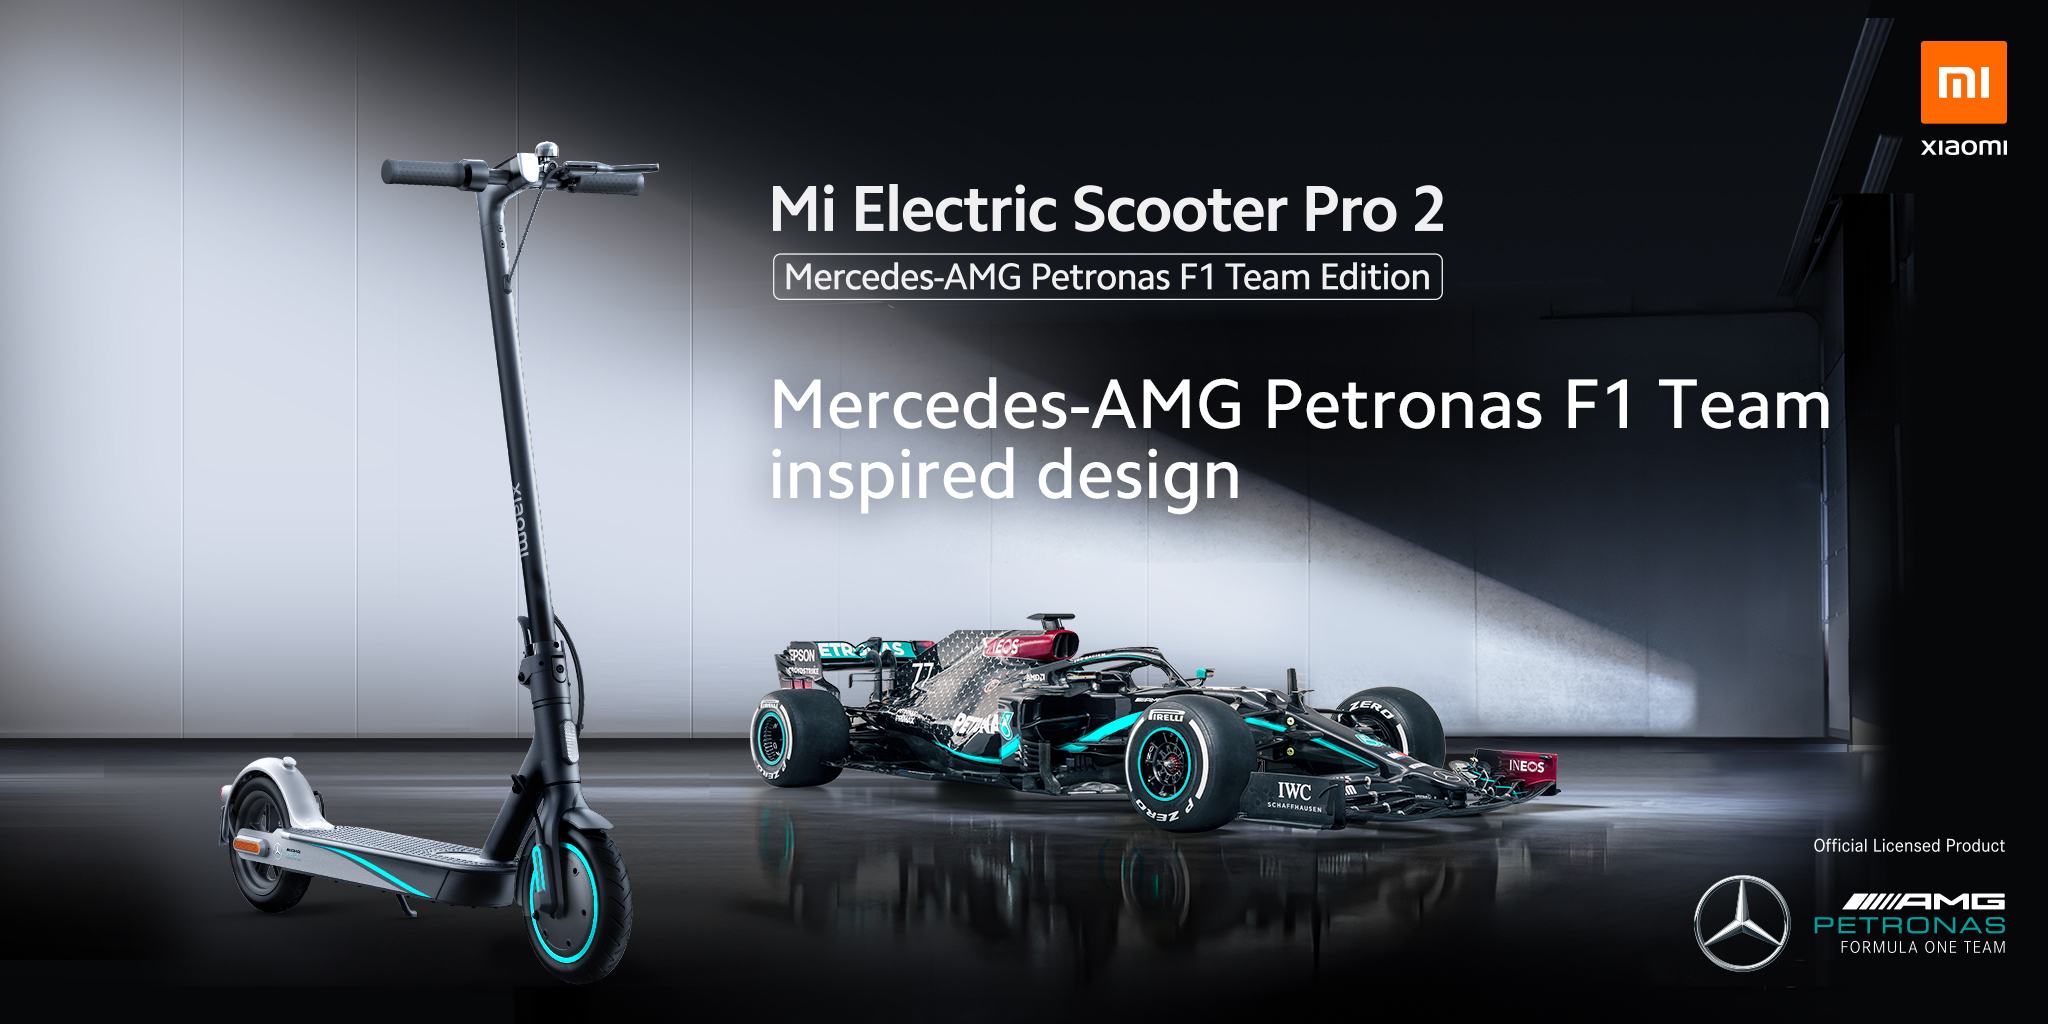  Mercedes AMG Petronas Formula One Team - Official